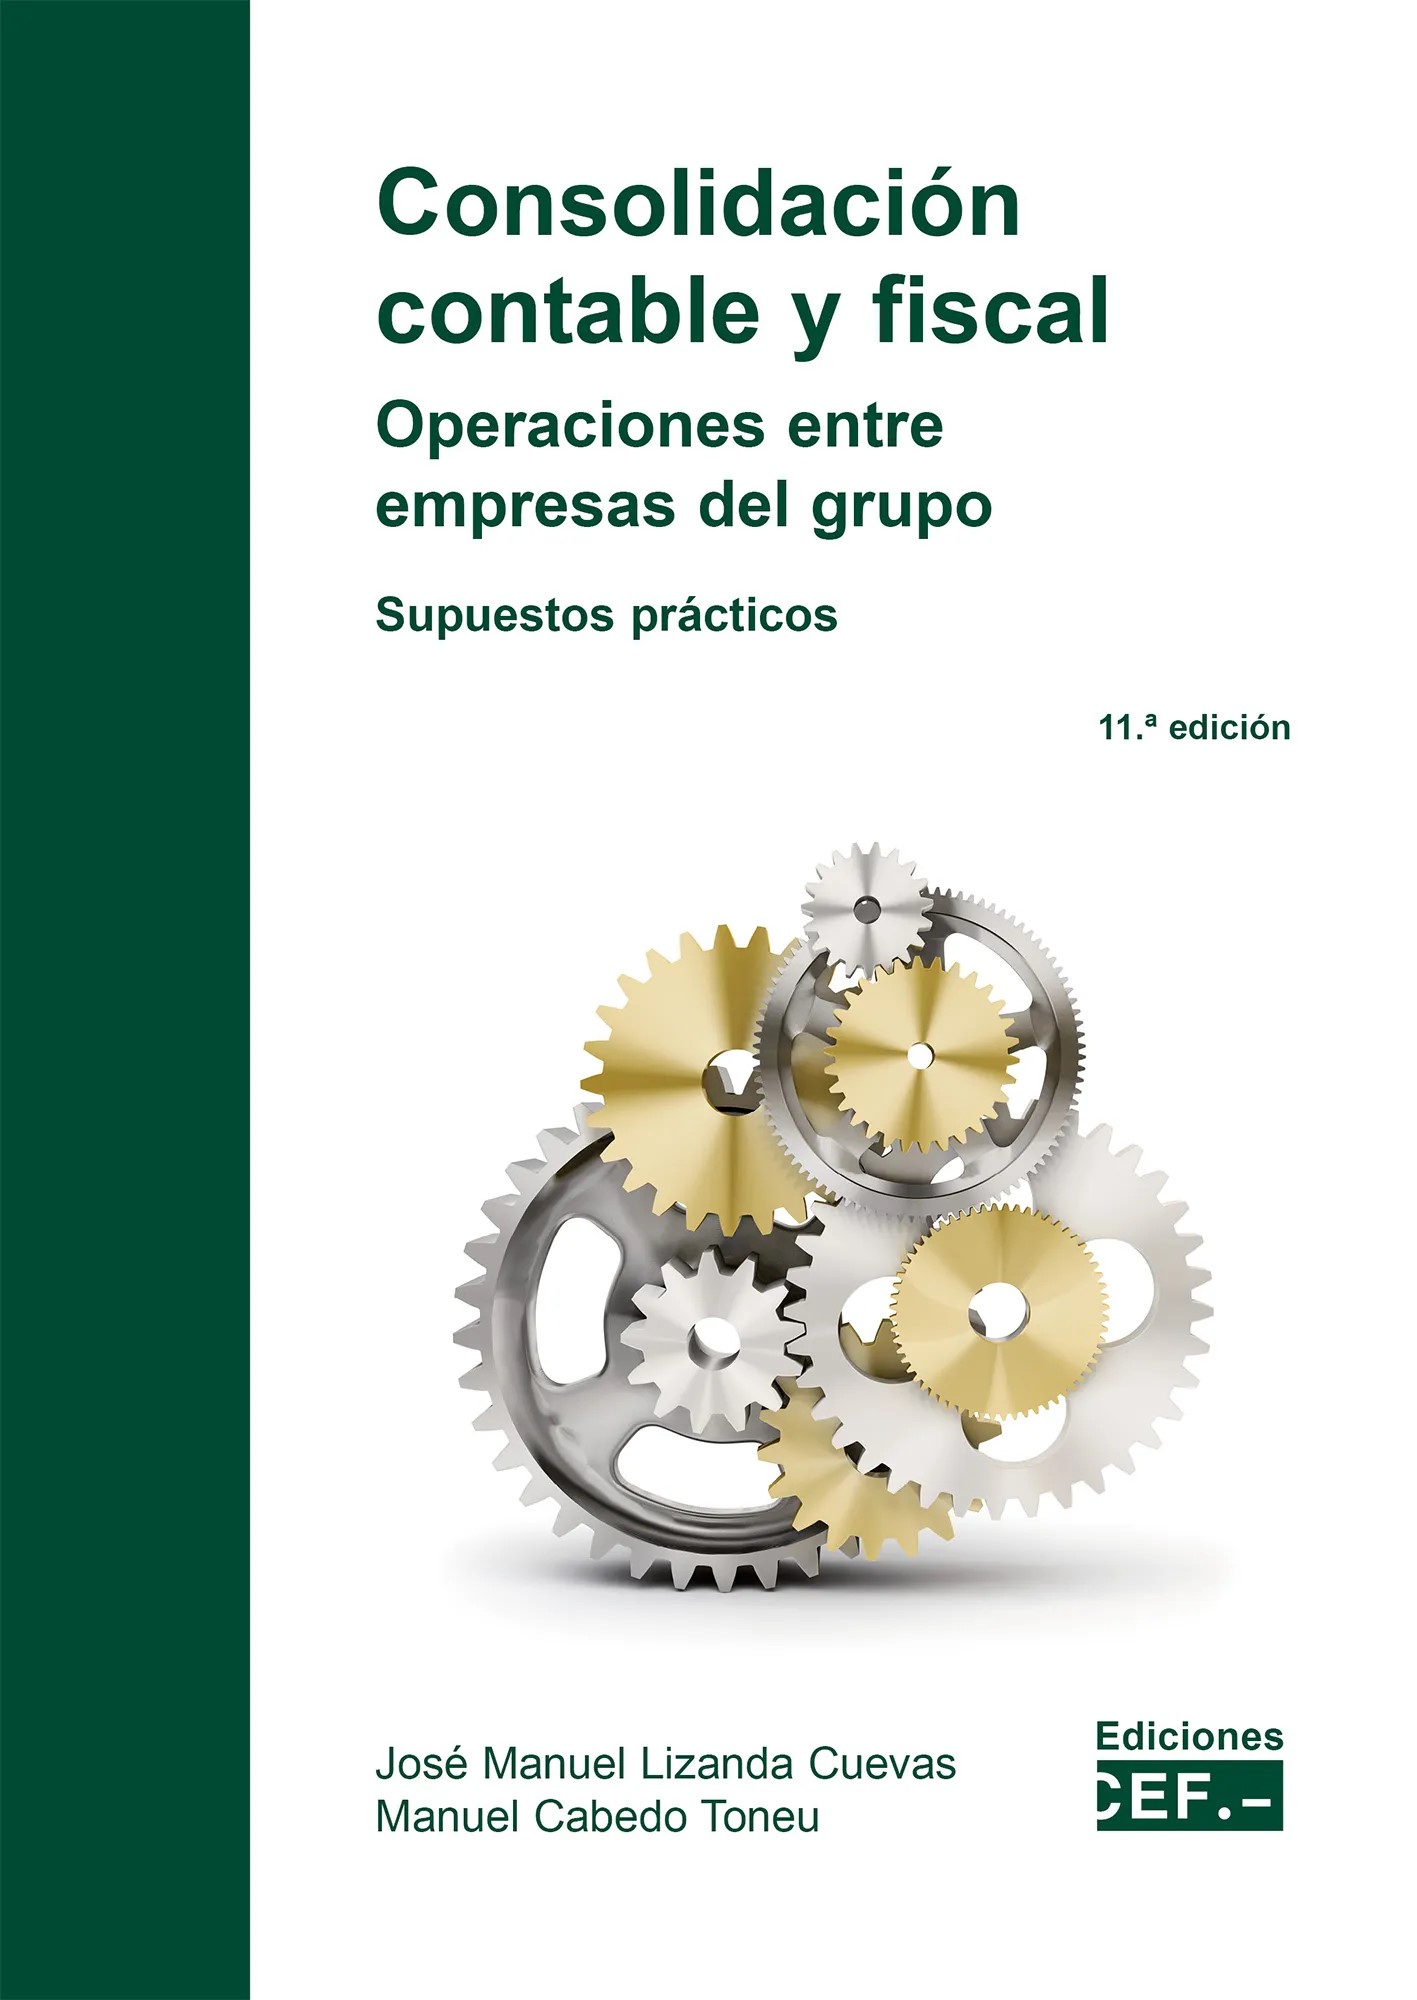 Consolidación contable y fiscal: operaciones entre empresas del grupo